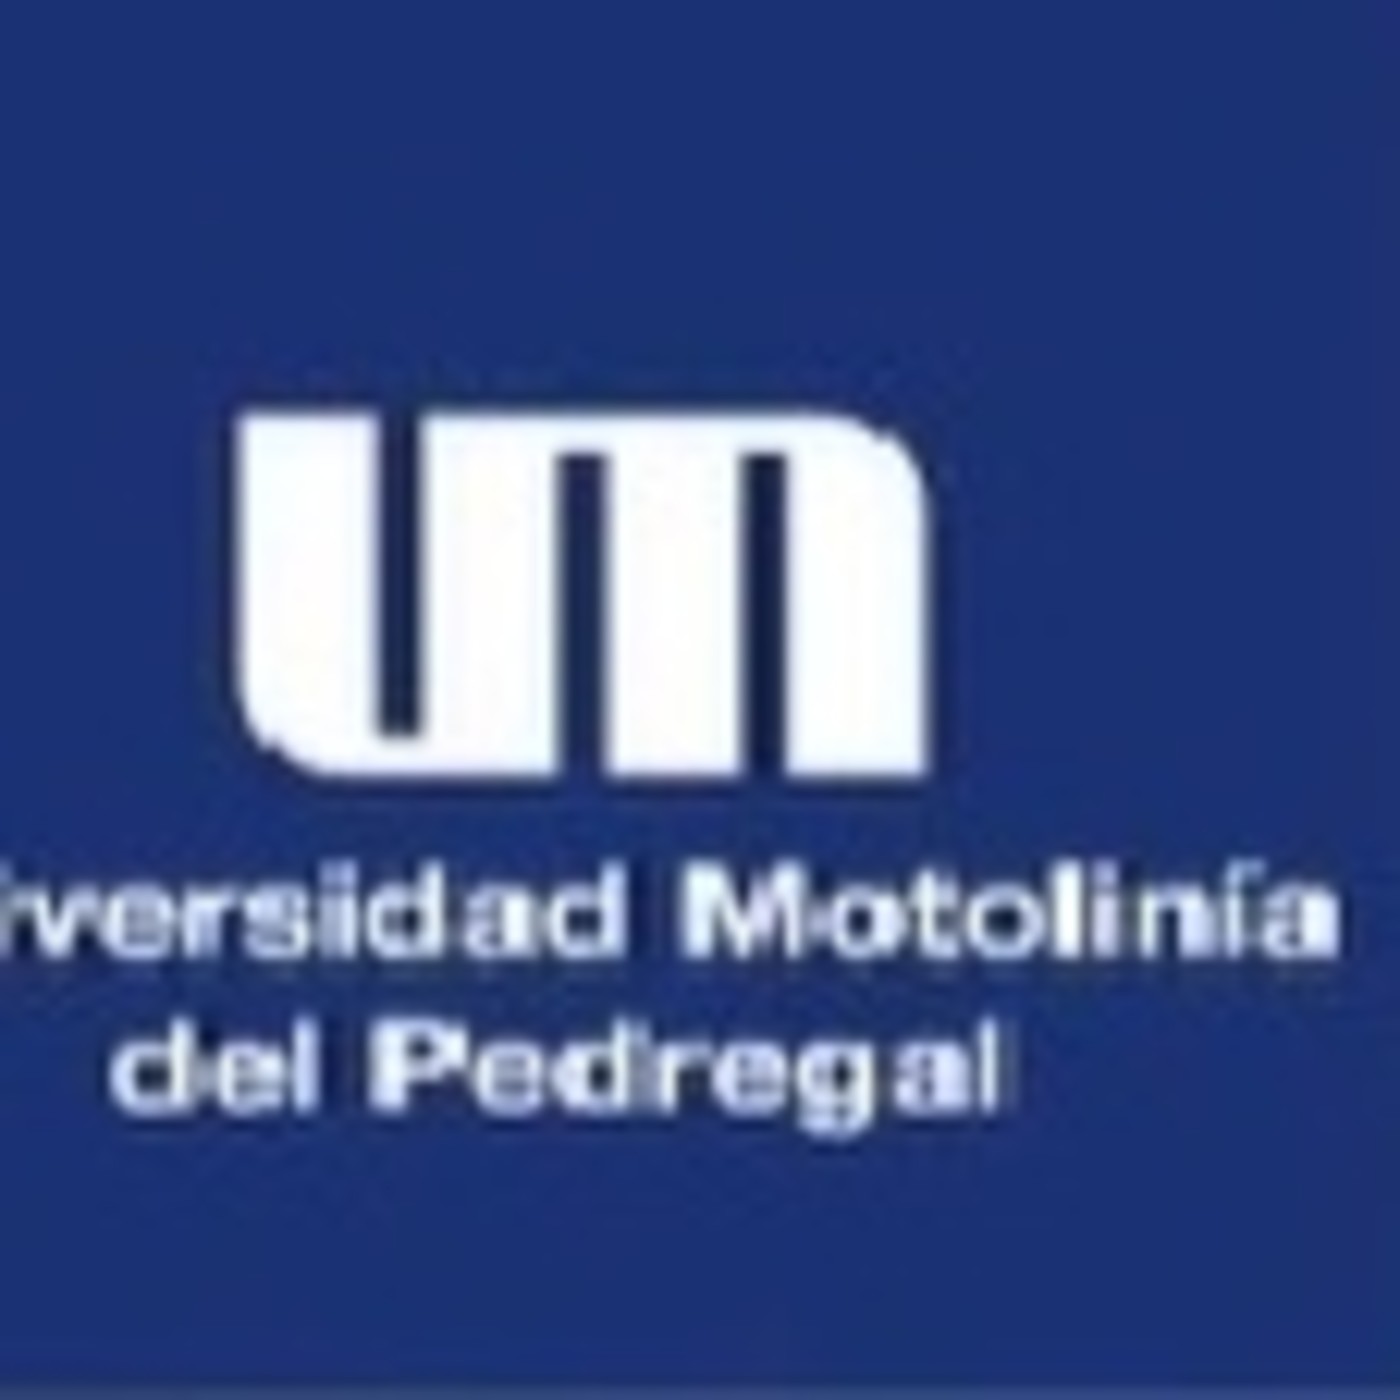 Universidad Motolinía